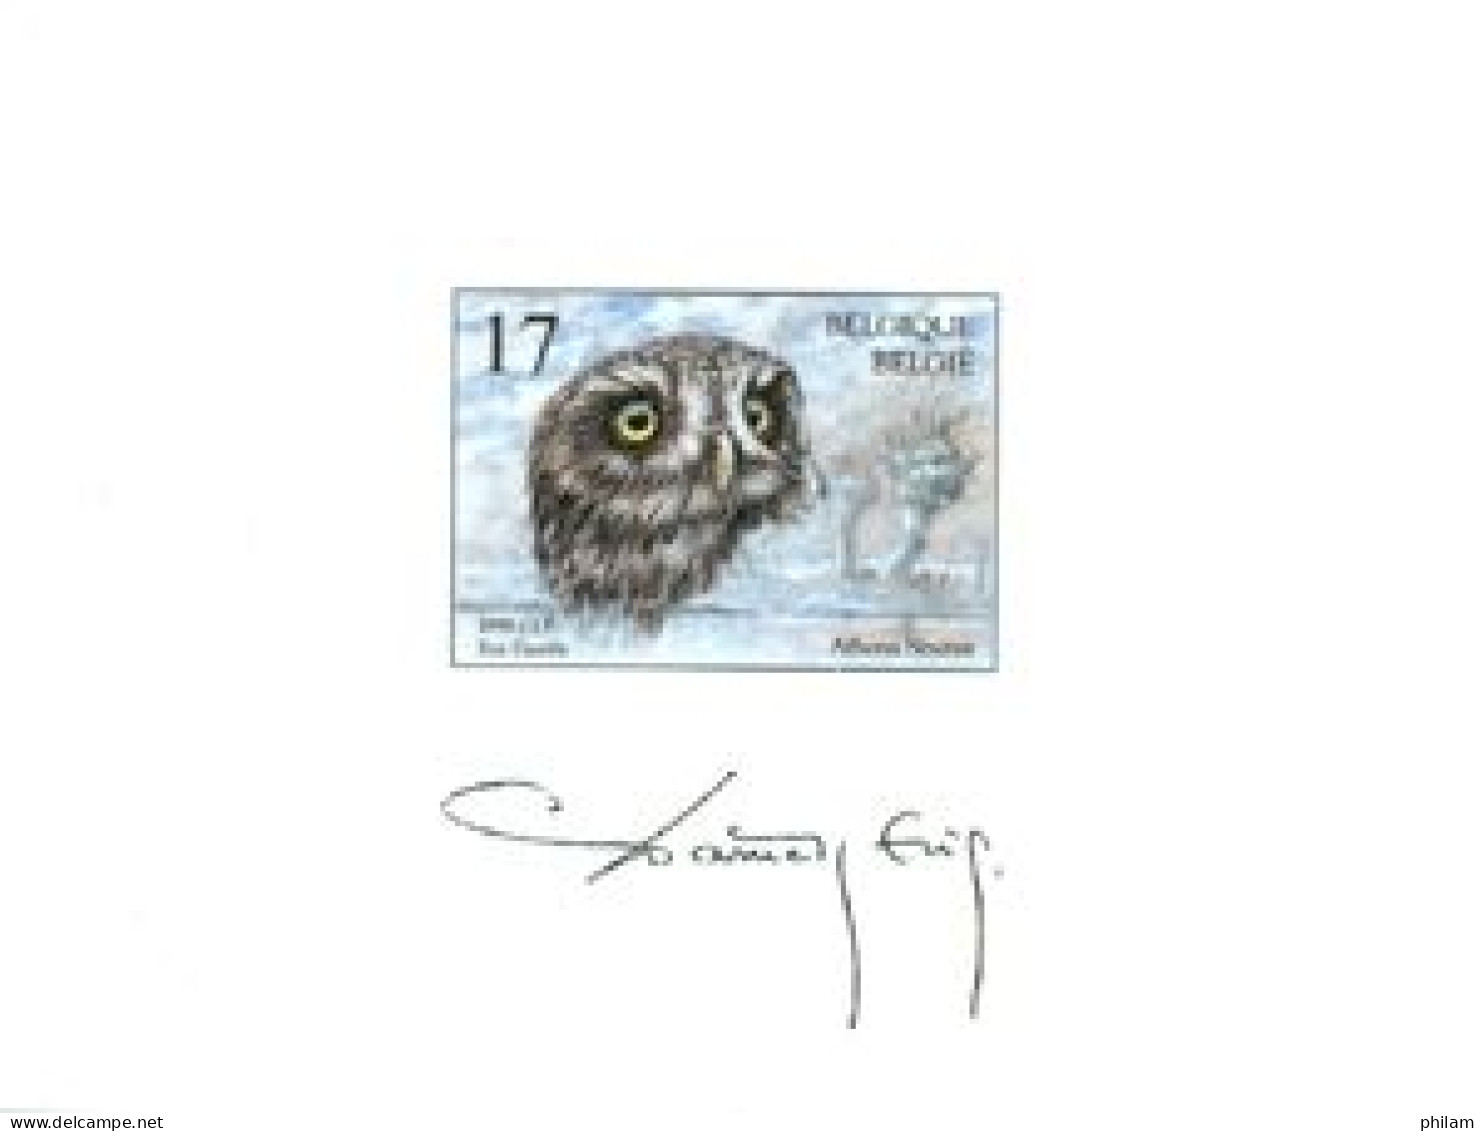 BELGIQUE 1999 - NA 6 - NL - Hibou - Uil - Owl - Texte En Néerlandais/Nederlandse Text - Niet-aangenomen Ontwerpen [NA]